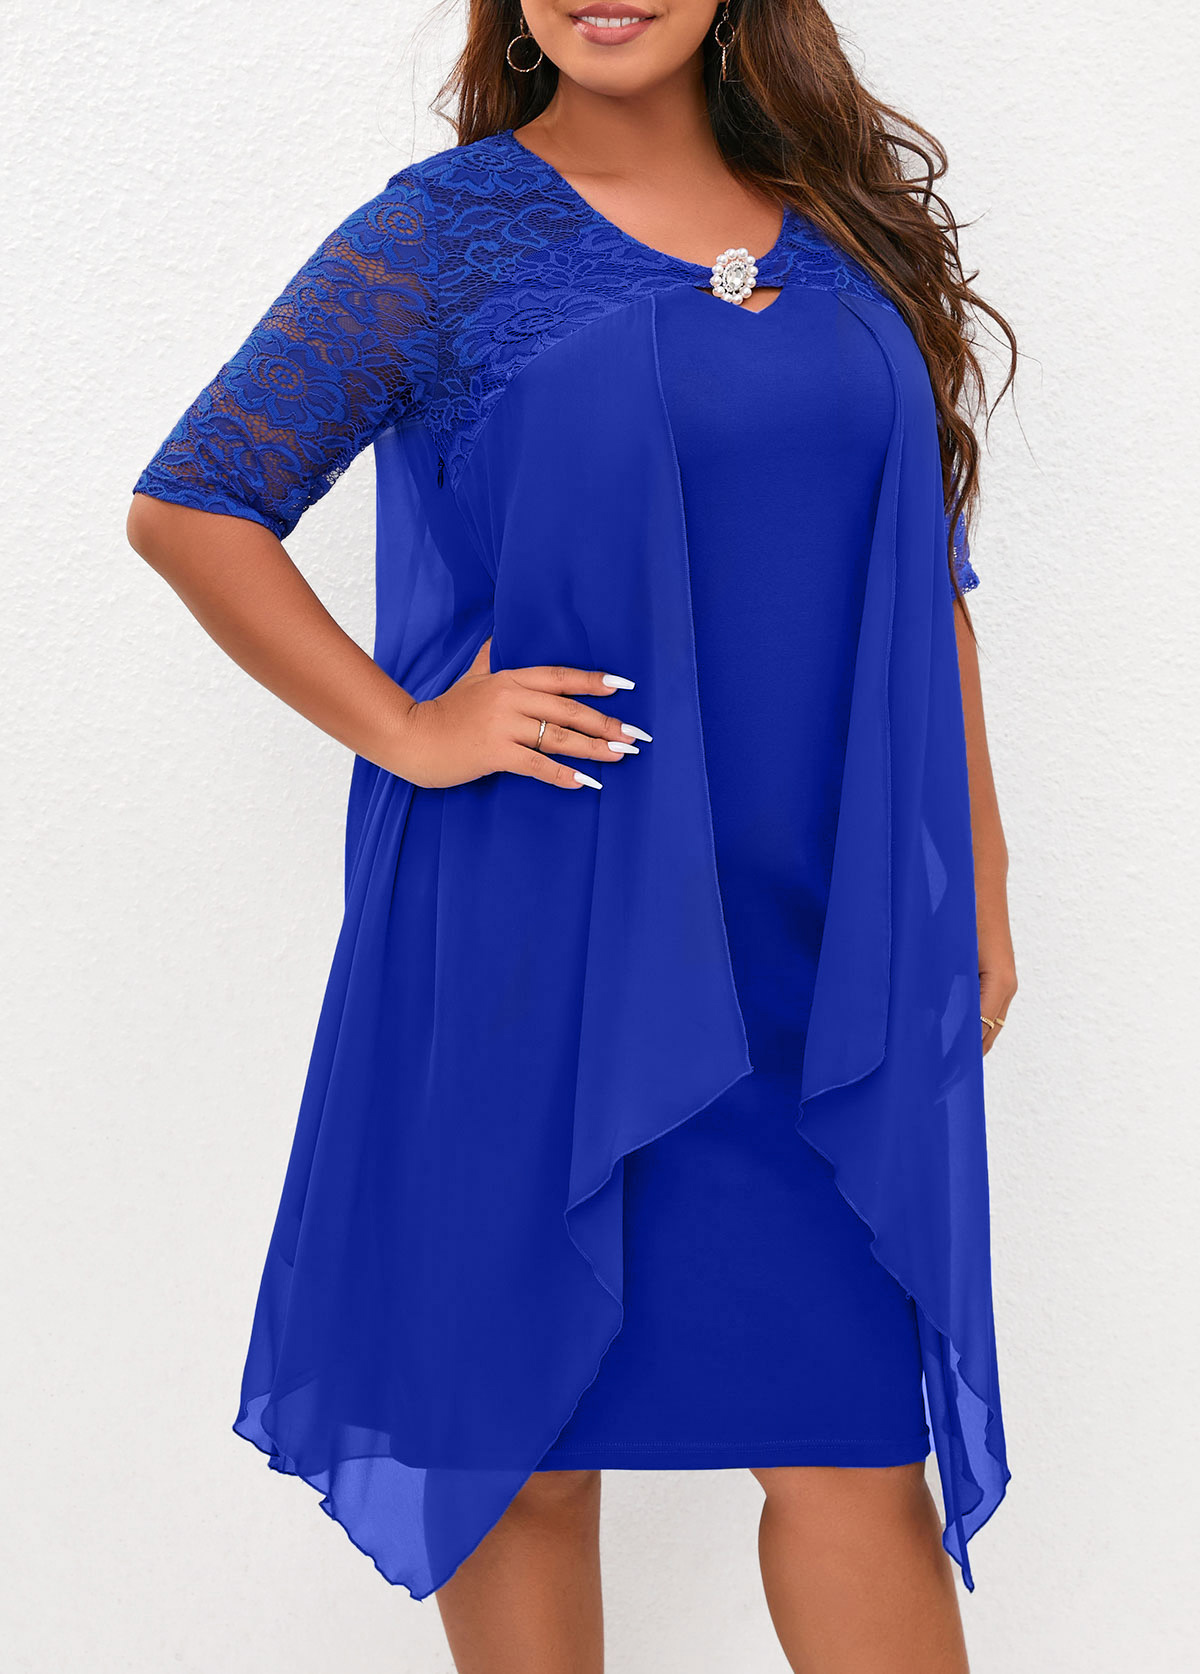 Royal Blue Lace Stitching Plus Size Dress